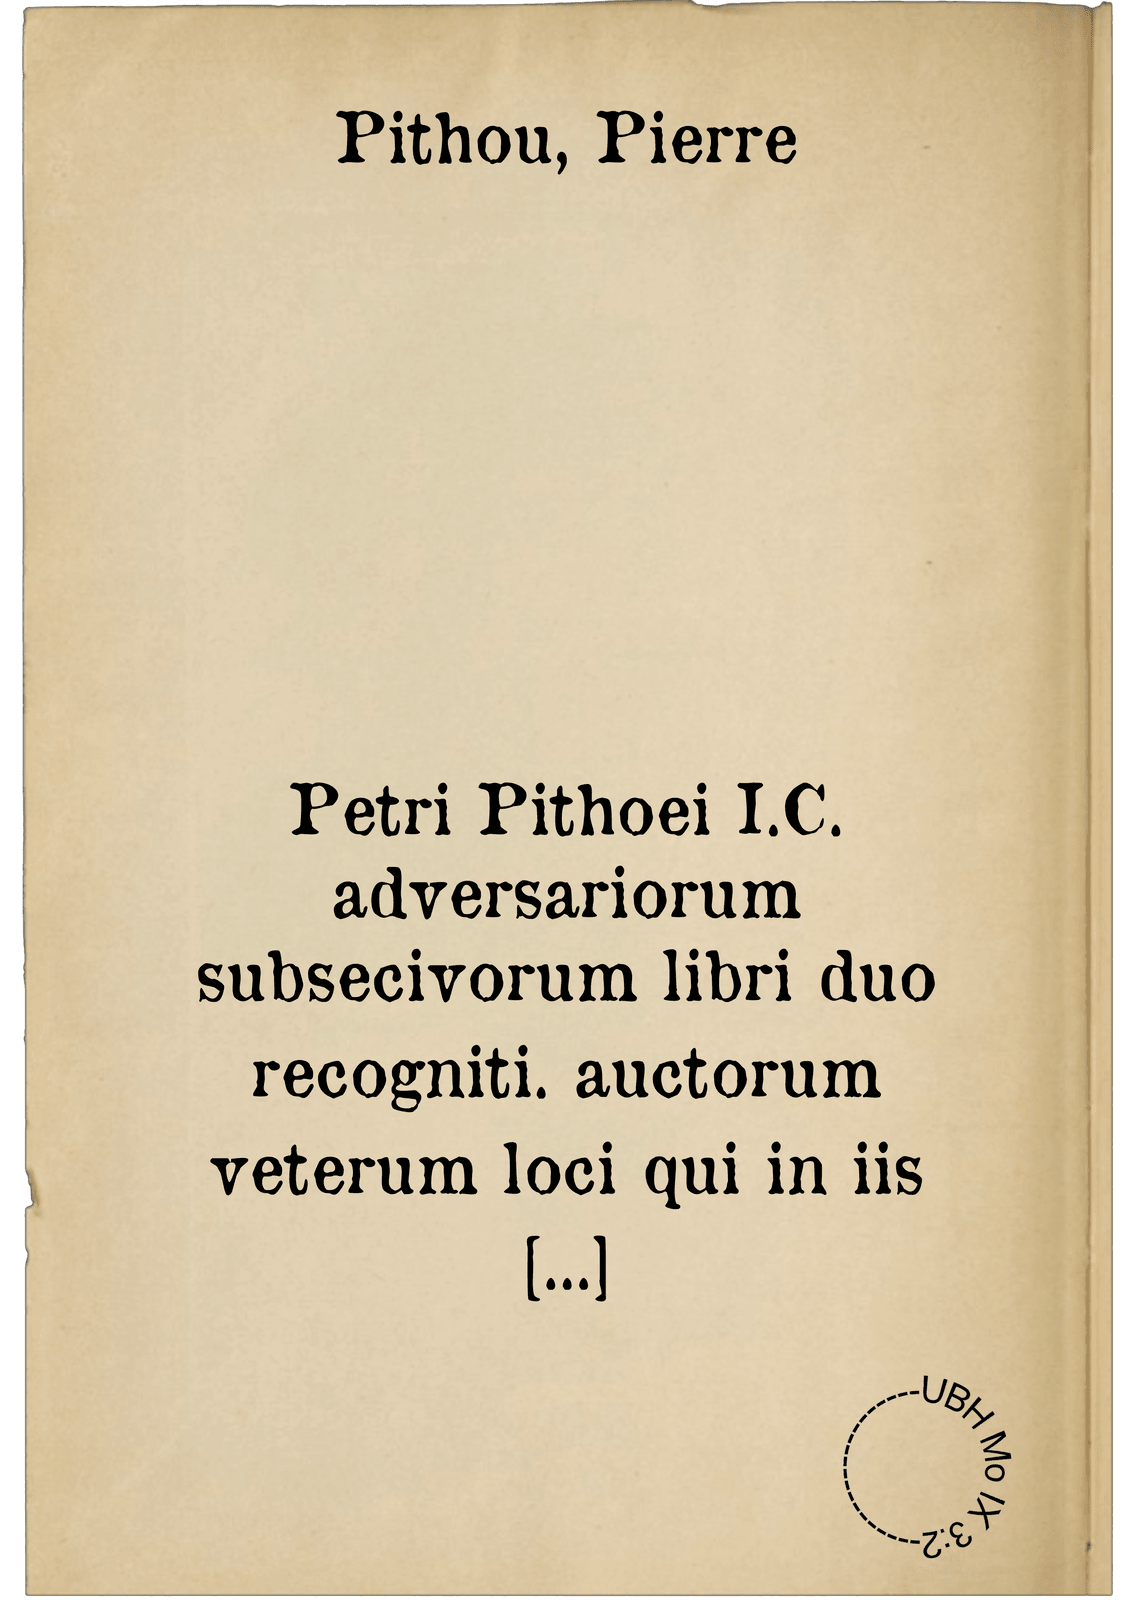 Petri Pithoei I.C. adversariorum subsecivorum libri duo recogniti. auctorum veterum loci qui in iis libris aut explicantur aut emendatur, per indicem notati sunt